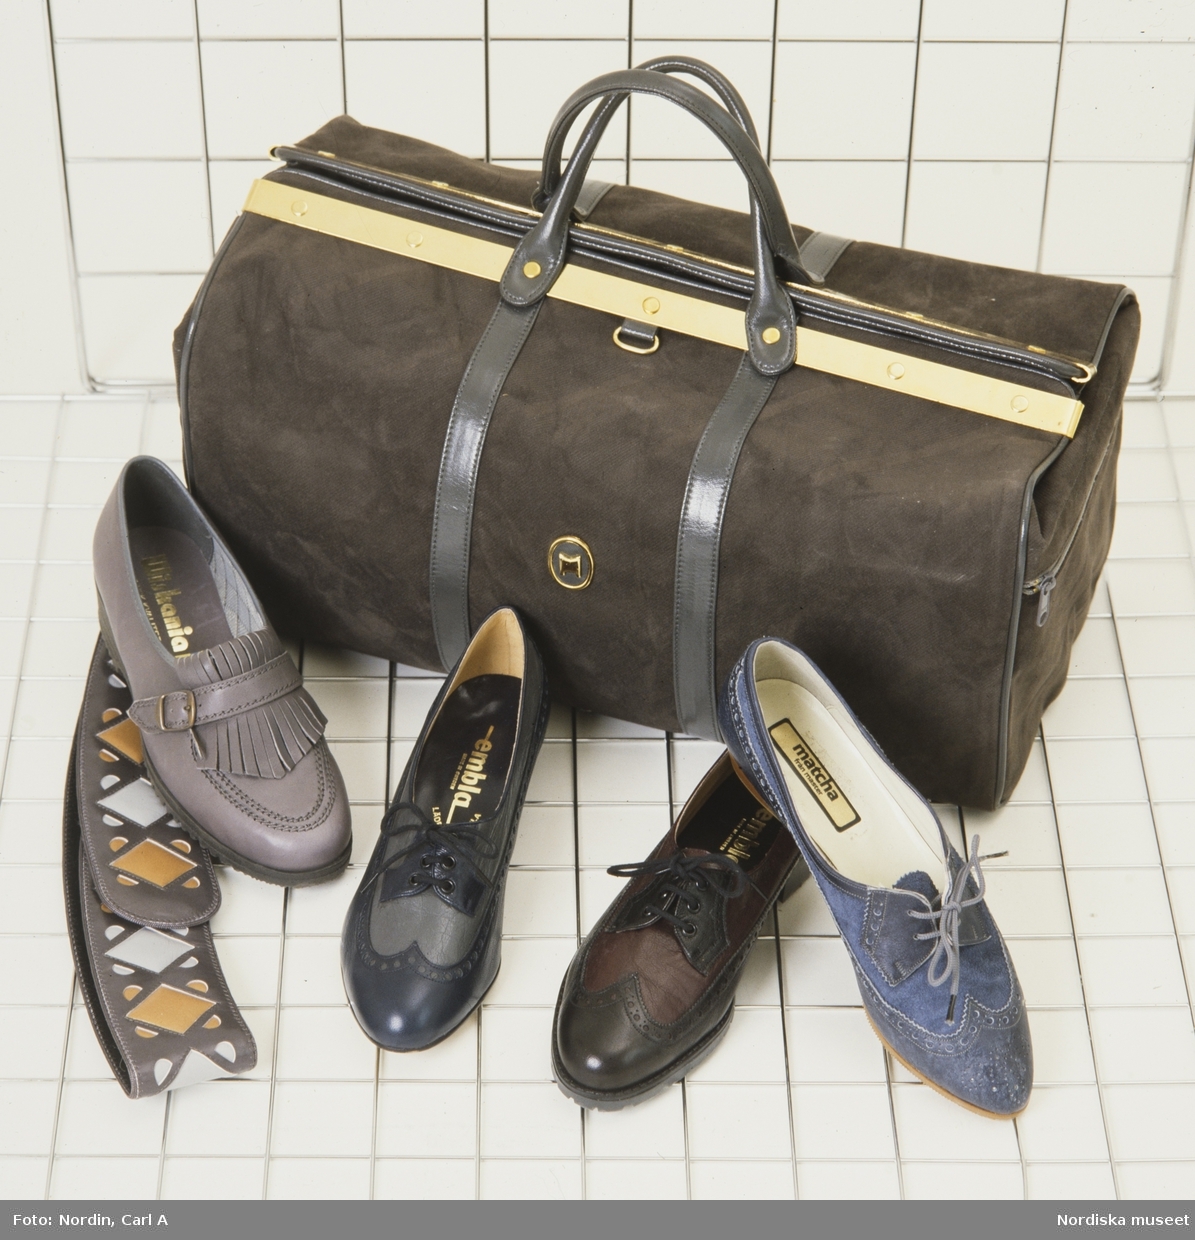 Tre snörskor i olika färger, en grå sko med fransar, ett mönstrat skärp och en brun moccaväska.